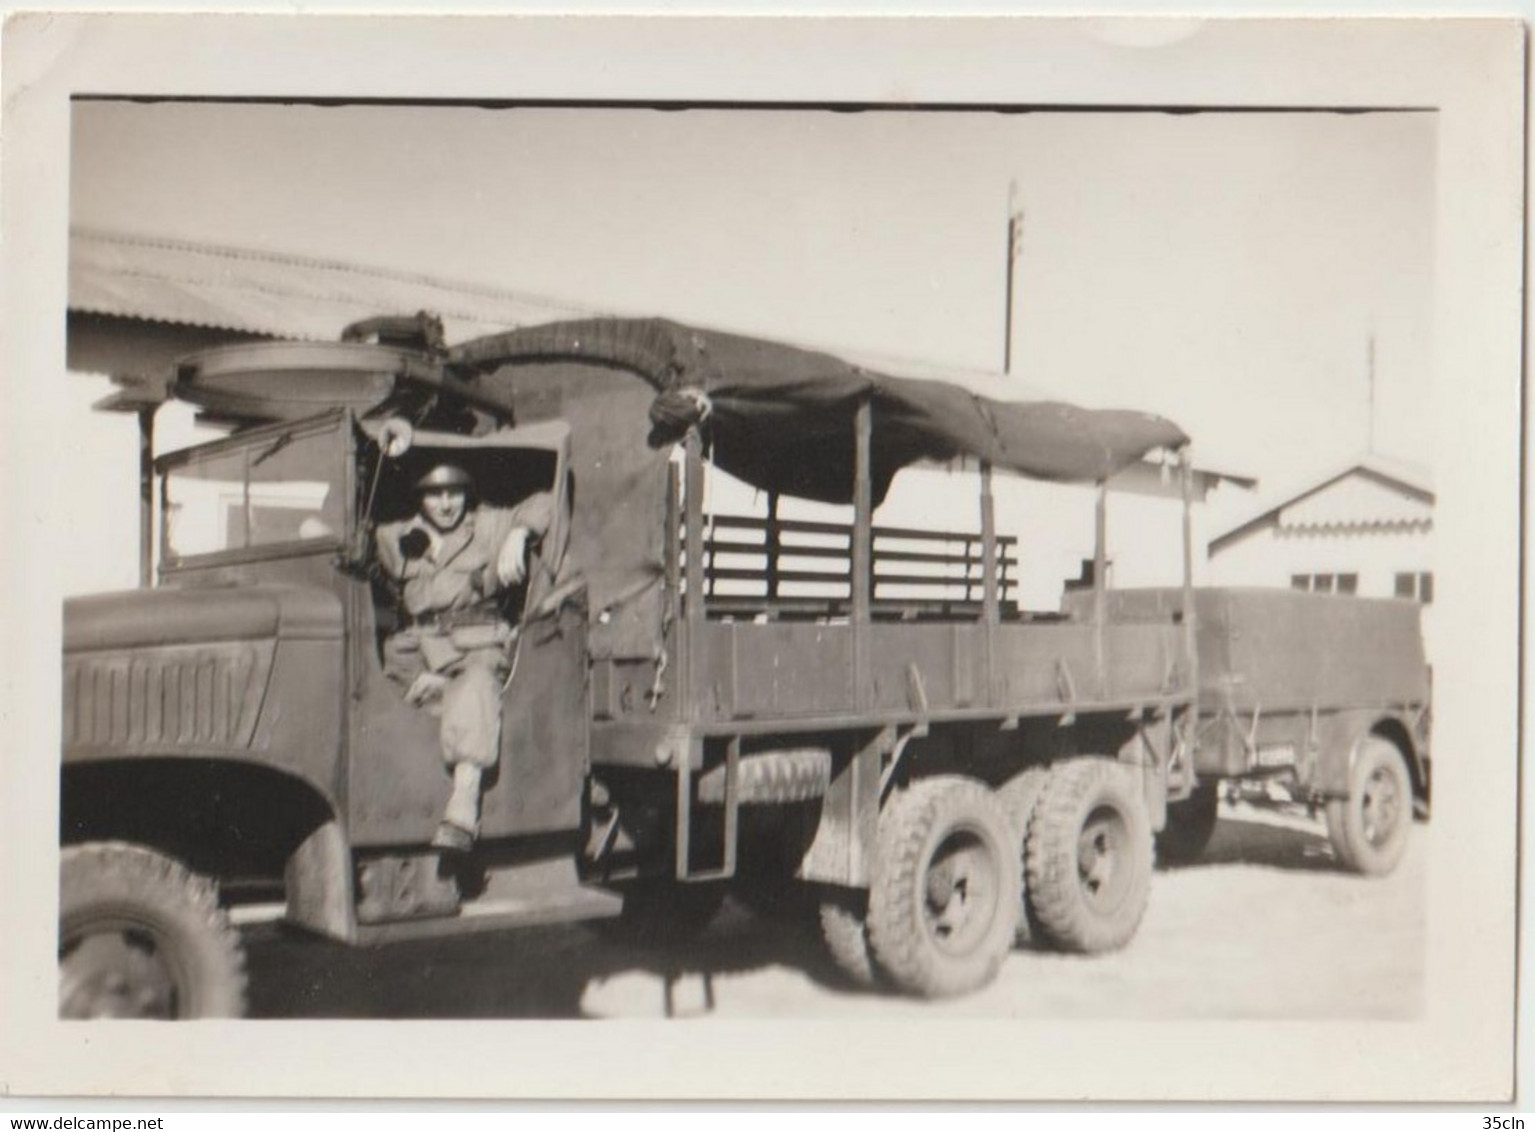 PHOTO Originale D'un Camion  GMC Cabine Bâchée Avec Conducteur Tractant Une Remorque 1 Tonne. Circulaire De Mitrailleuse - Vehicles